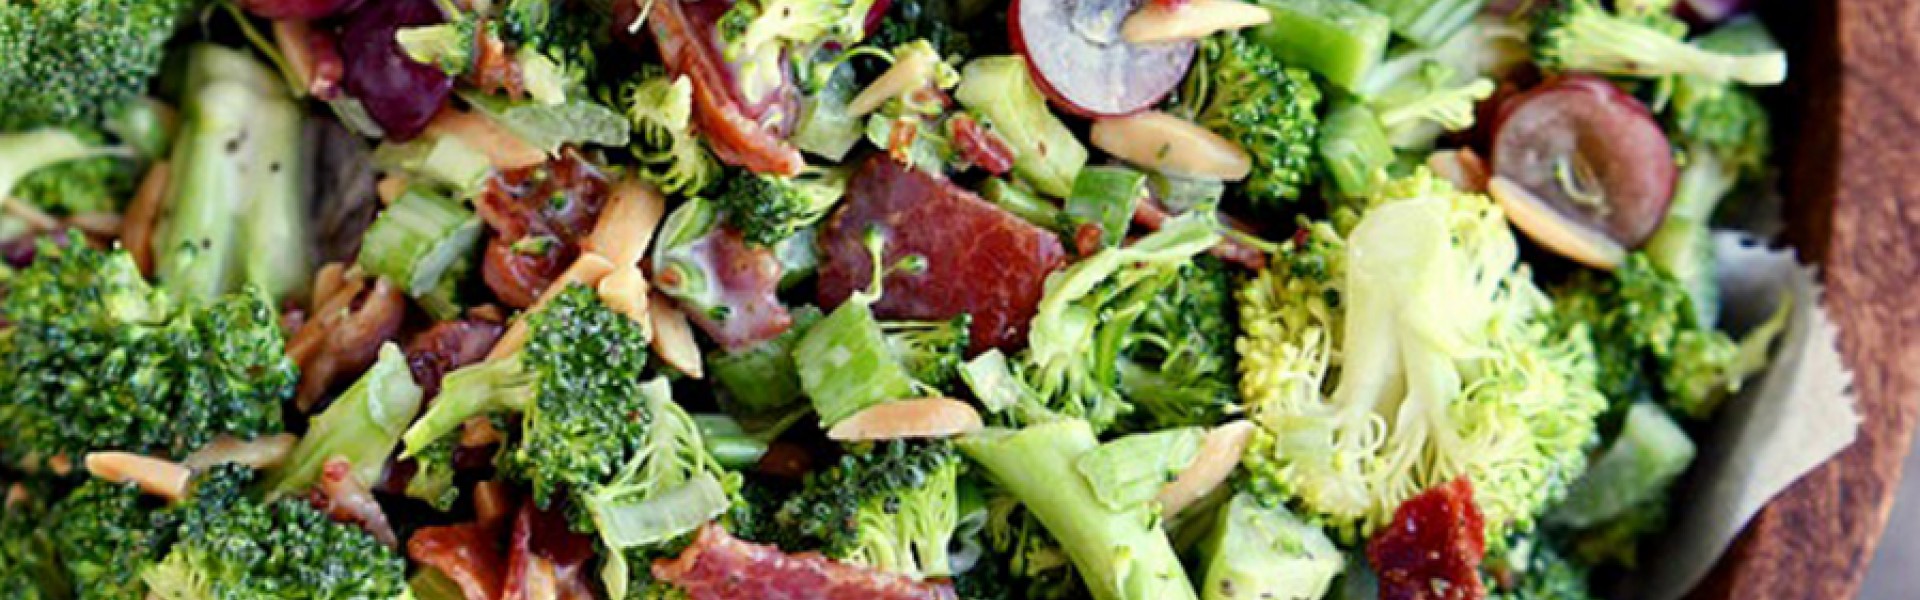 Best ever broccoli salad banner 2